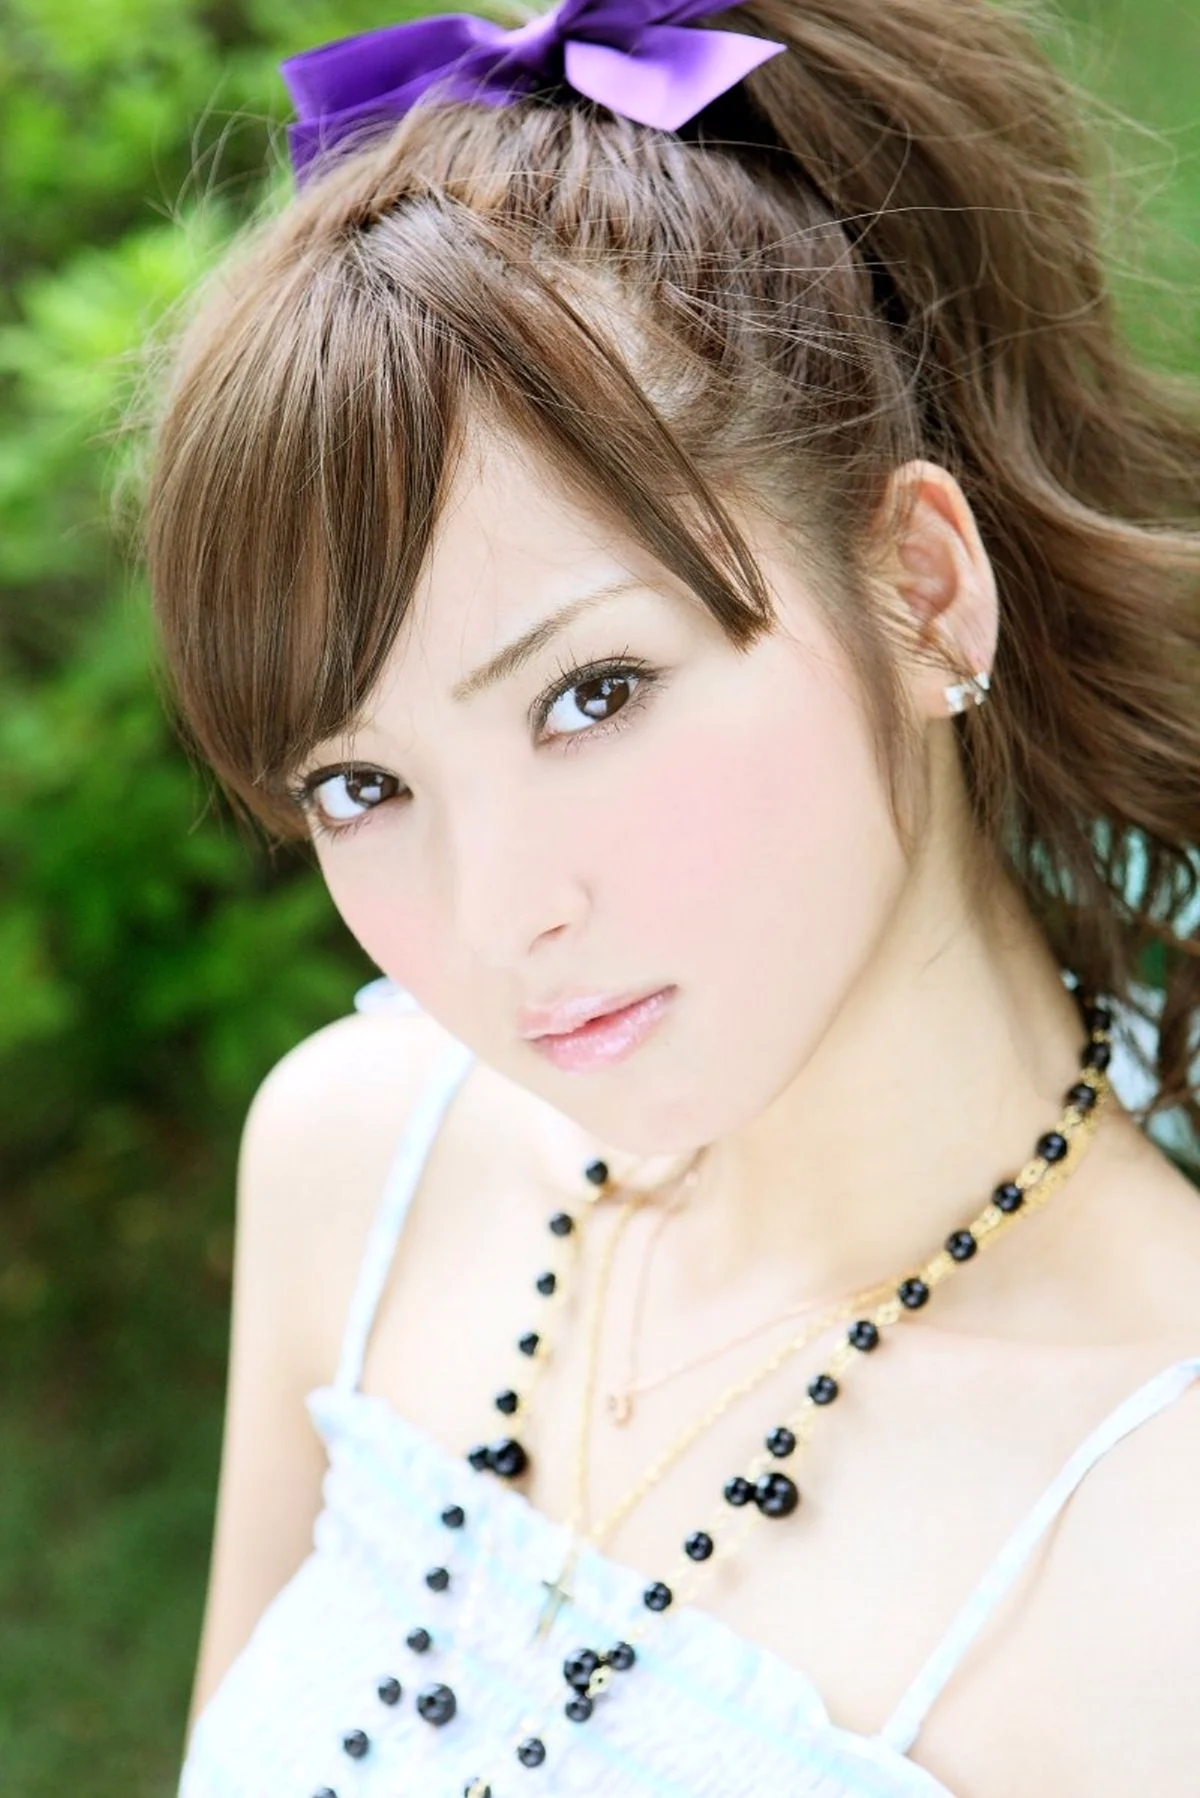 Нозоми Сасаки. Красивая девушка